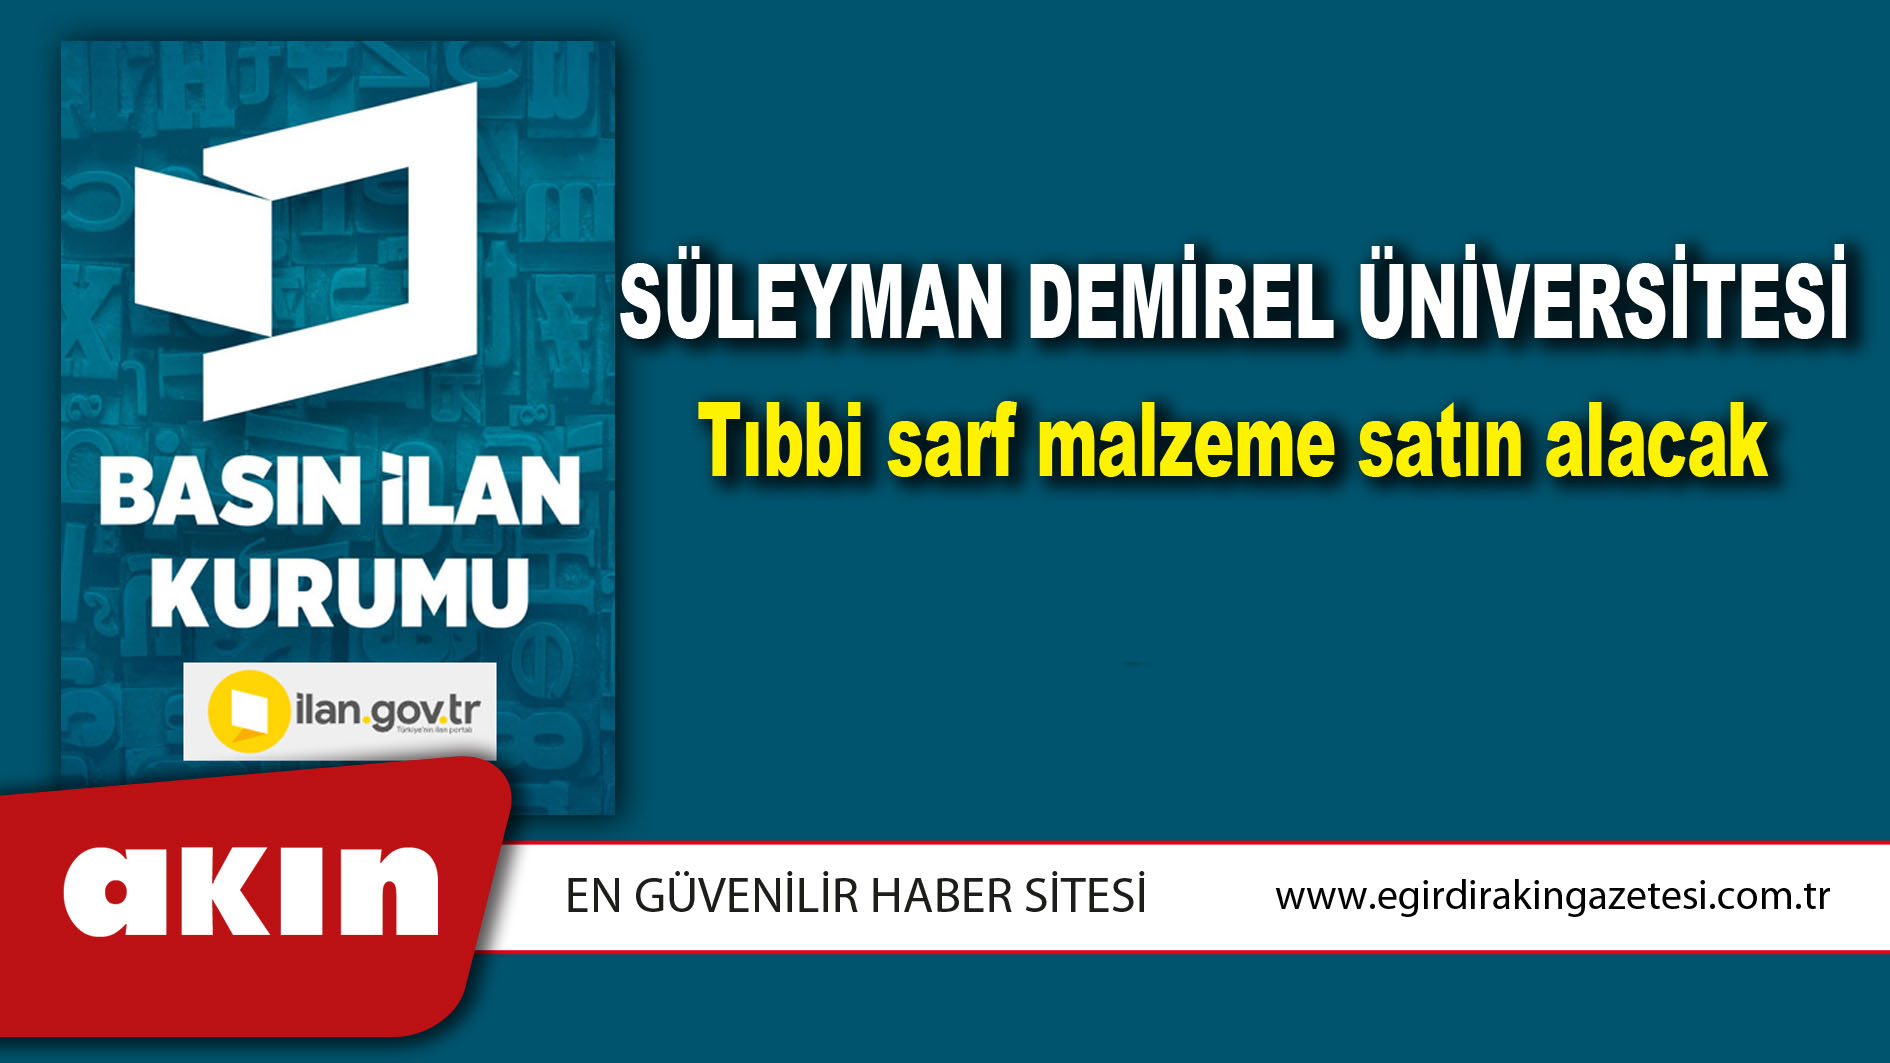 eğirdir haber,akın gazetesi,egirdir haberler,son dakika,Süleyman Demirel Üniversitesi Tıbbi sarf malzeme satın alacak